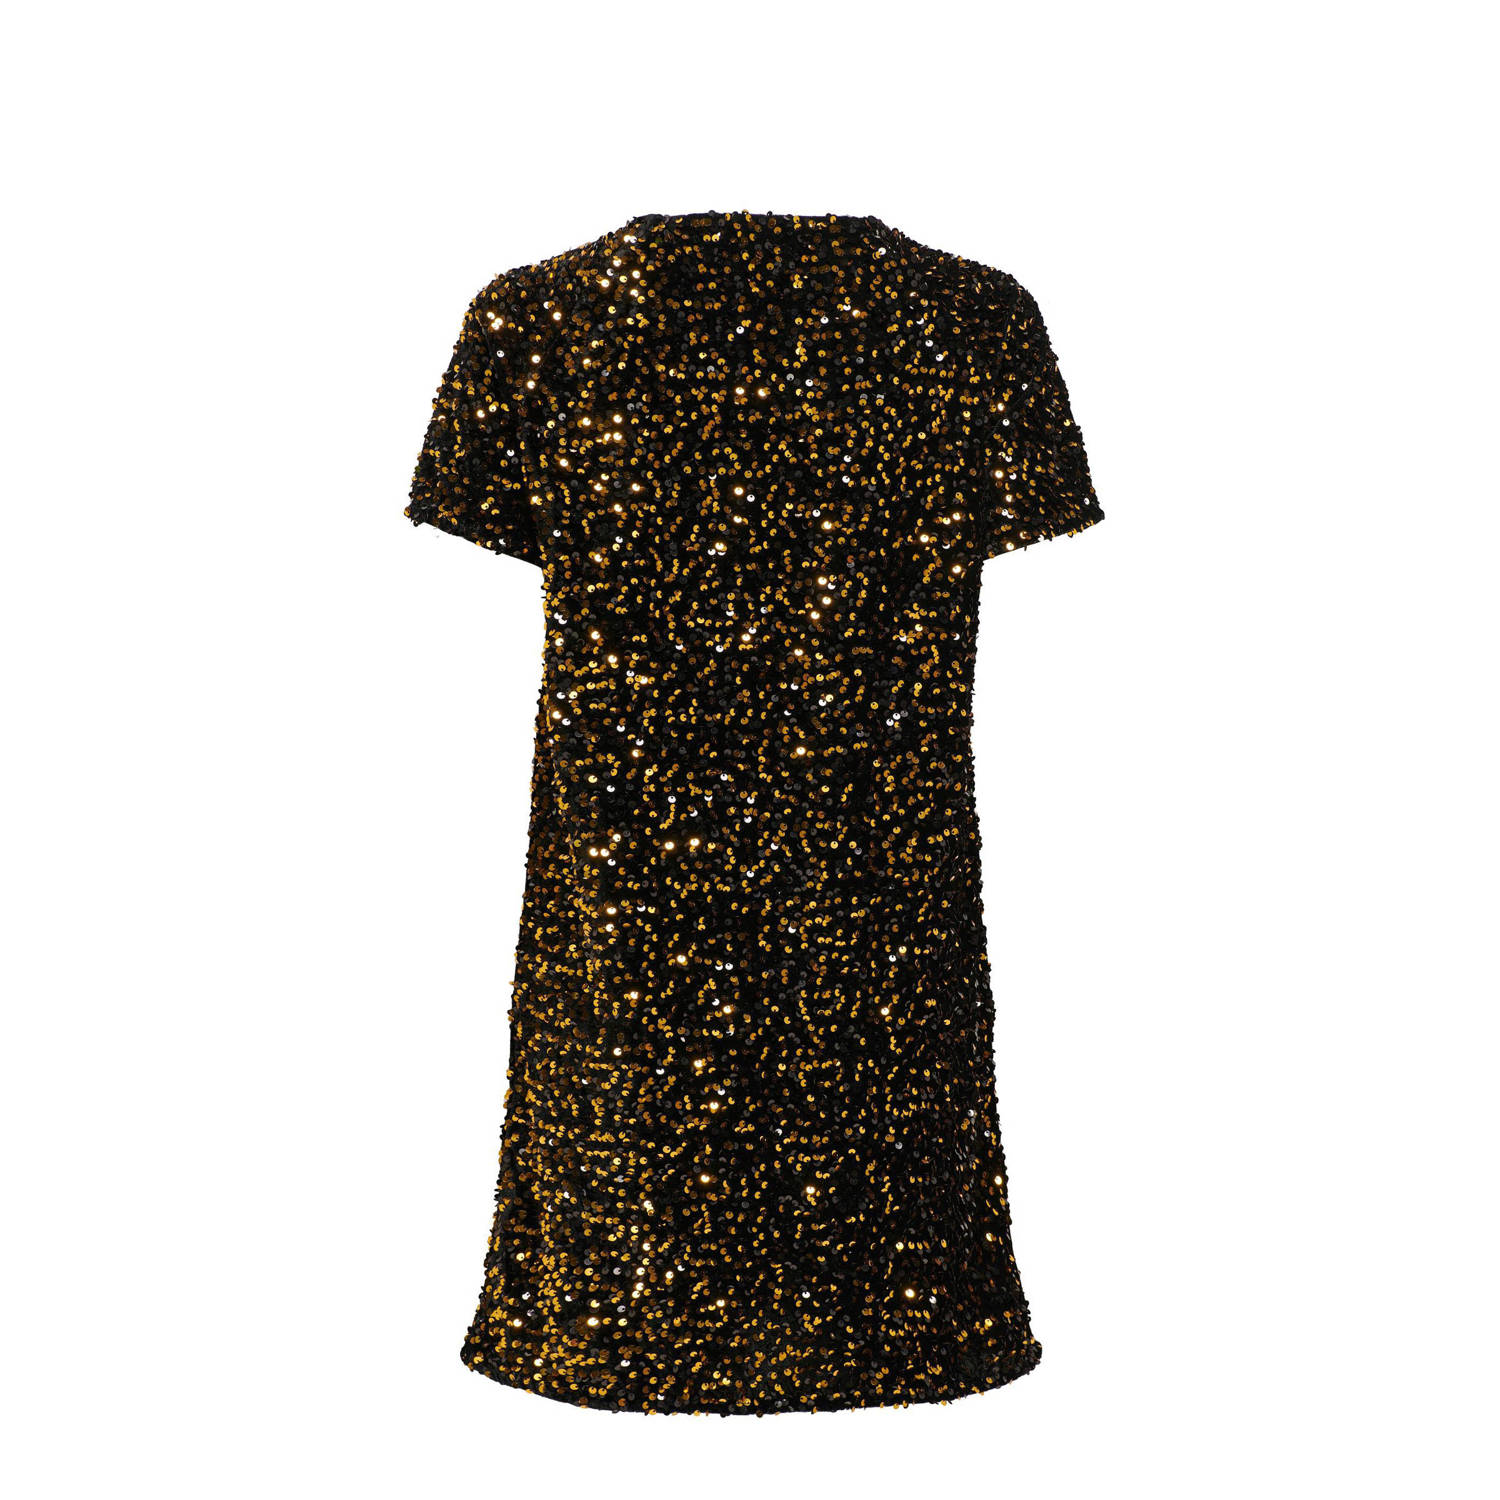 JDY jurk SHIRLEY met pailletten zwart goud